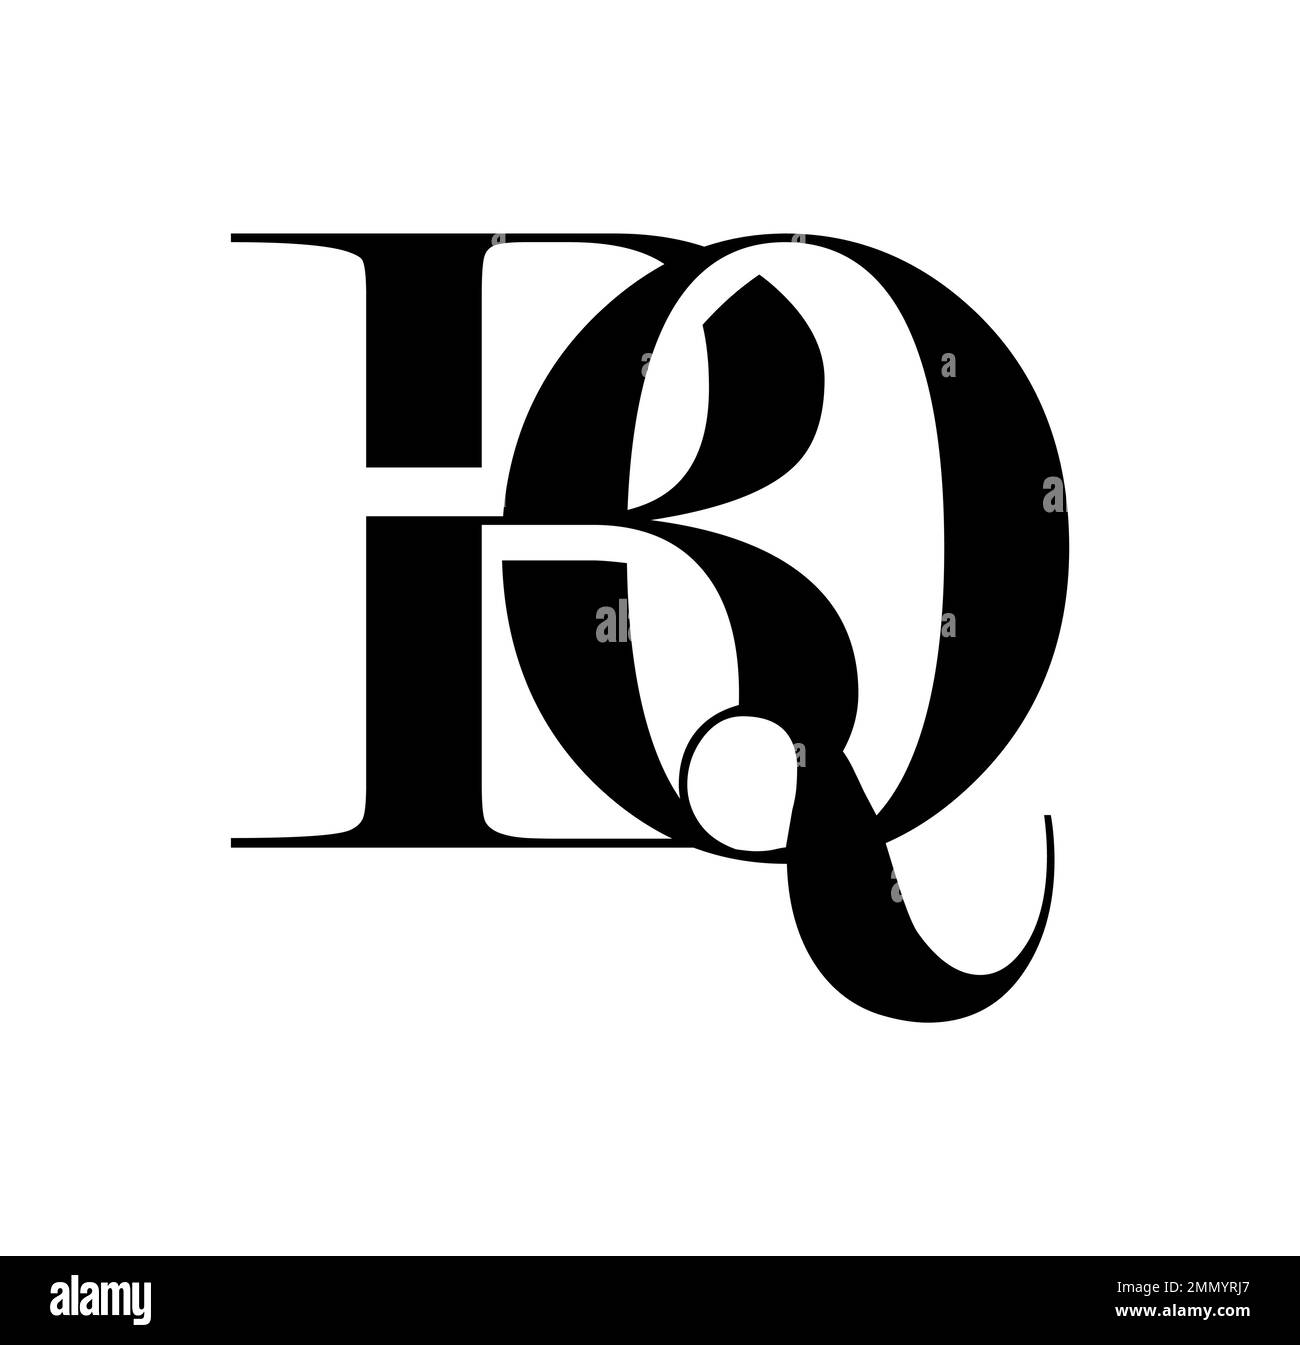 Illustration vectorielle isolée sur fond blanc de Monogram logo vecteur lettres initiales BQ Illustration de Vecteur